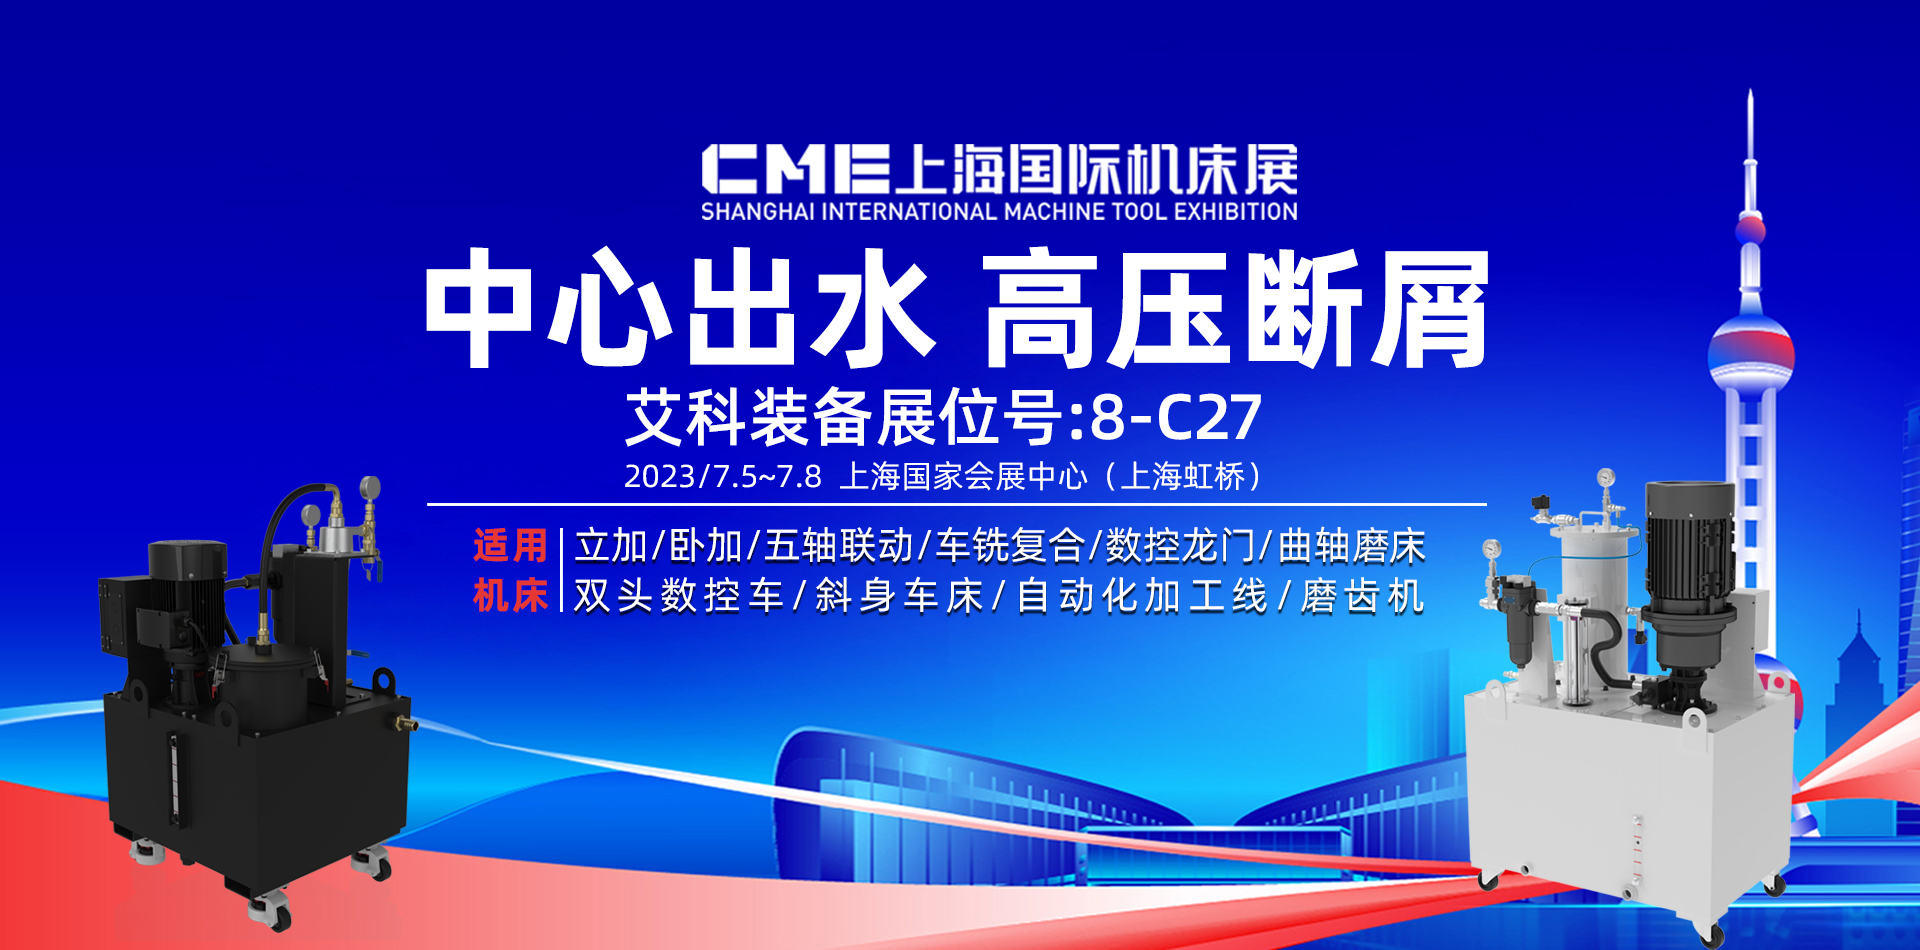 7.5-8日上海CME国际机床展艾科8-C27展位诚邀您光临